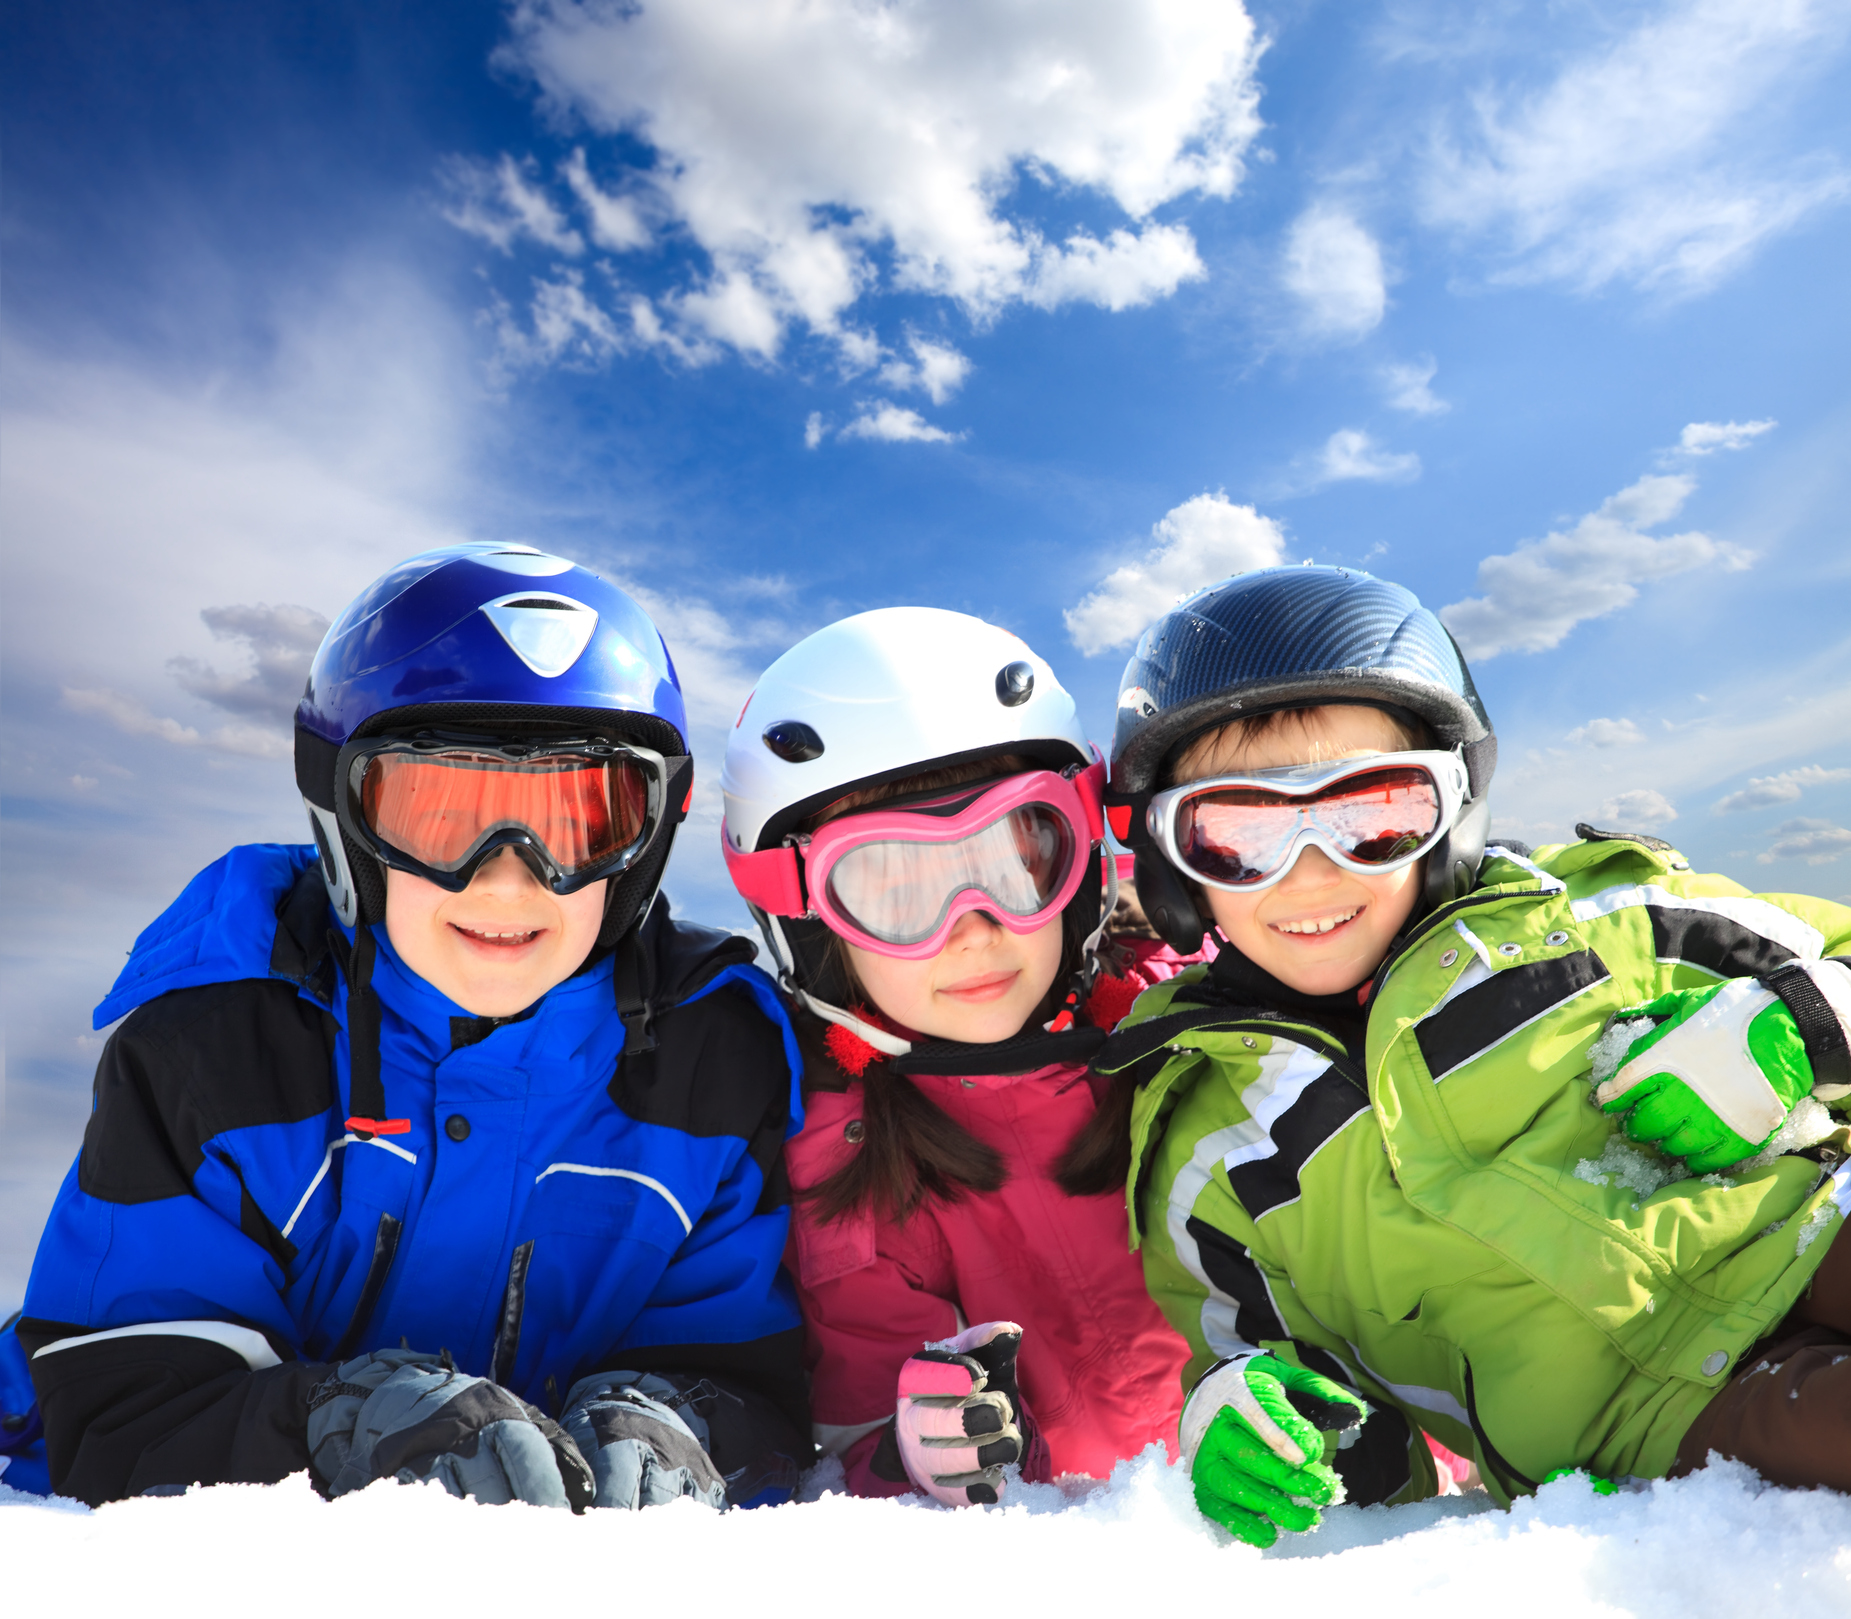 Practica esquí de manera segura: los mejores cascos que deberías utilizar  en este deporte aunque no sean obligatorios en España